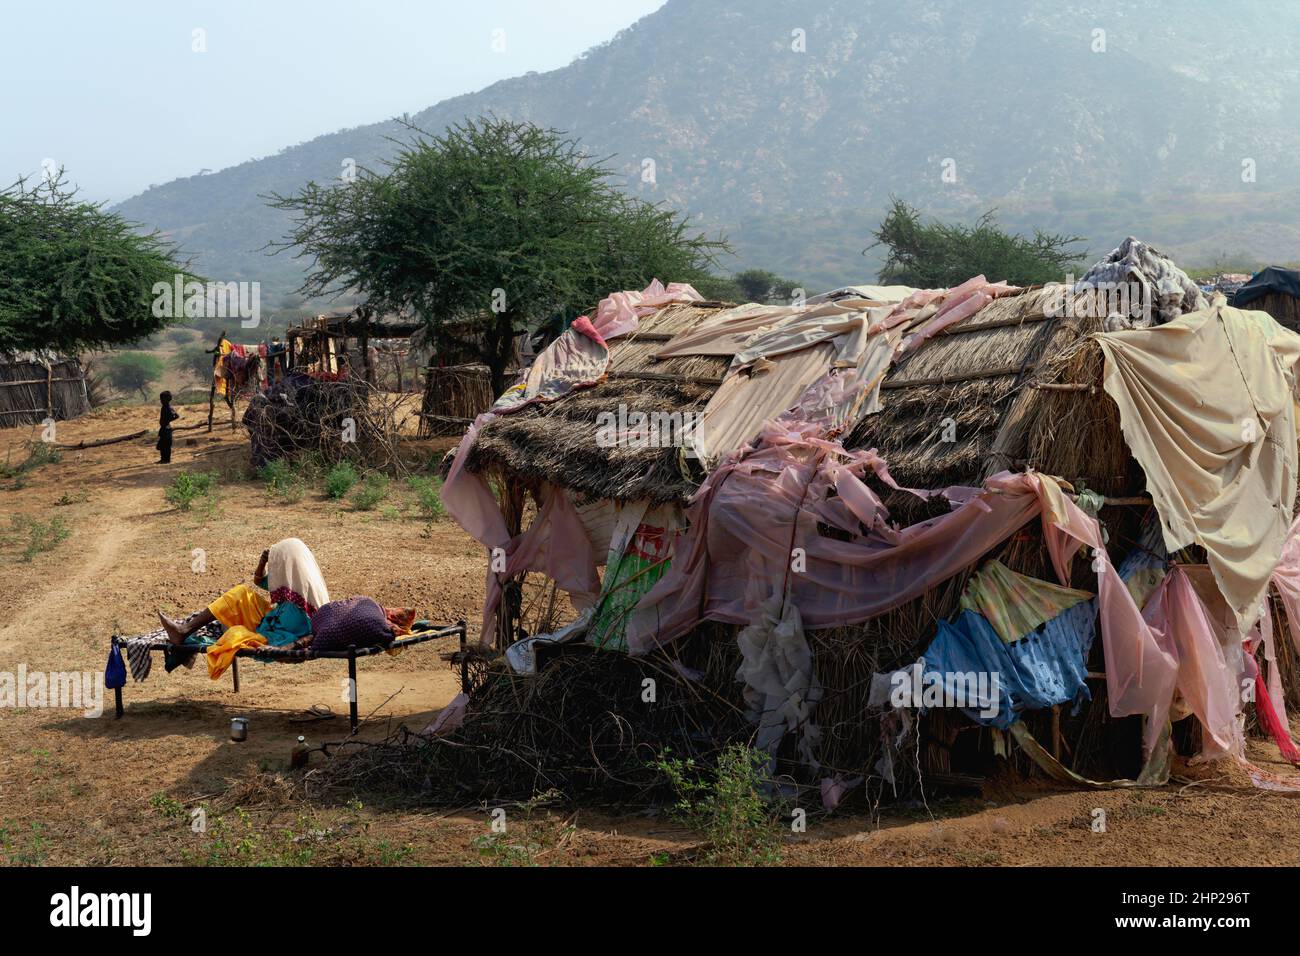 Femme affolée assise sur un lit de camp à l'extérieur suite à une tempête de pluie ayant endommagé sa cabane dans le désert de Thar près de Pushkar, en Inde. Banque D'Images